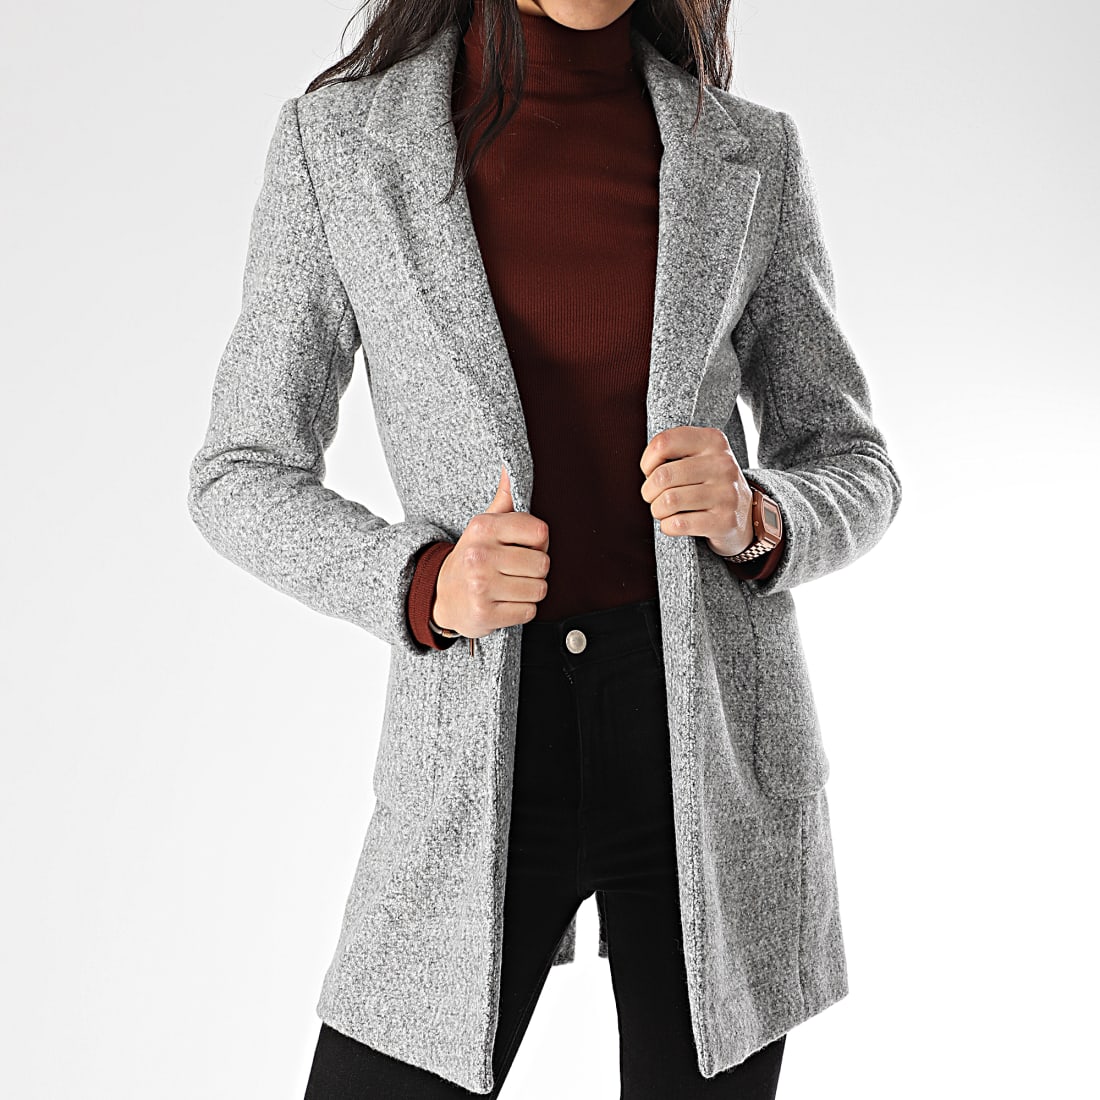 manteau gris femme solde